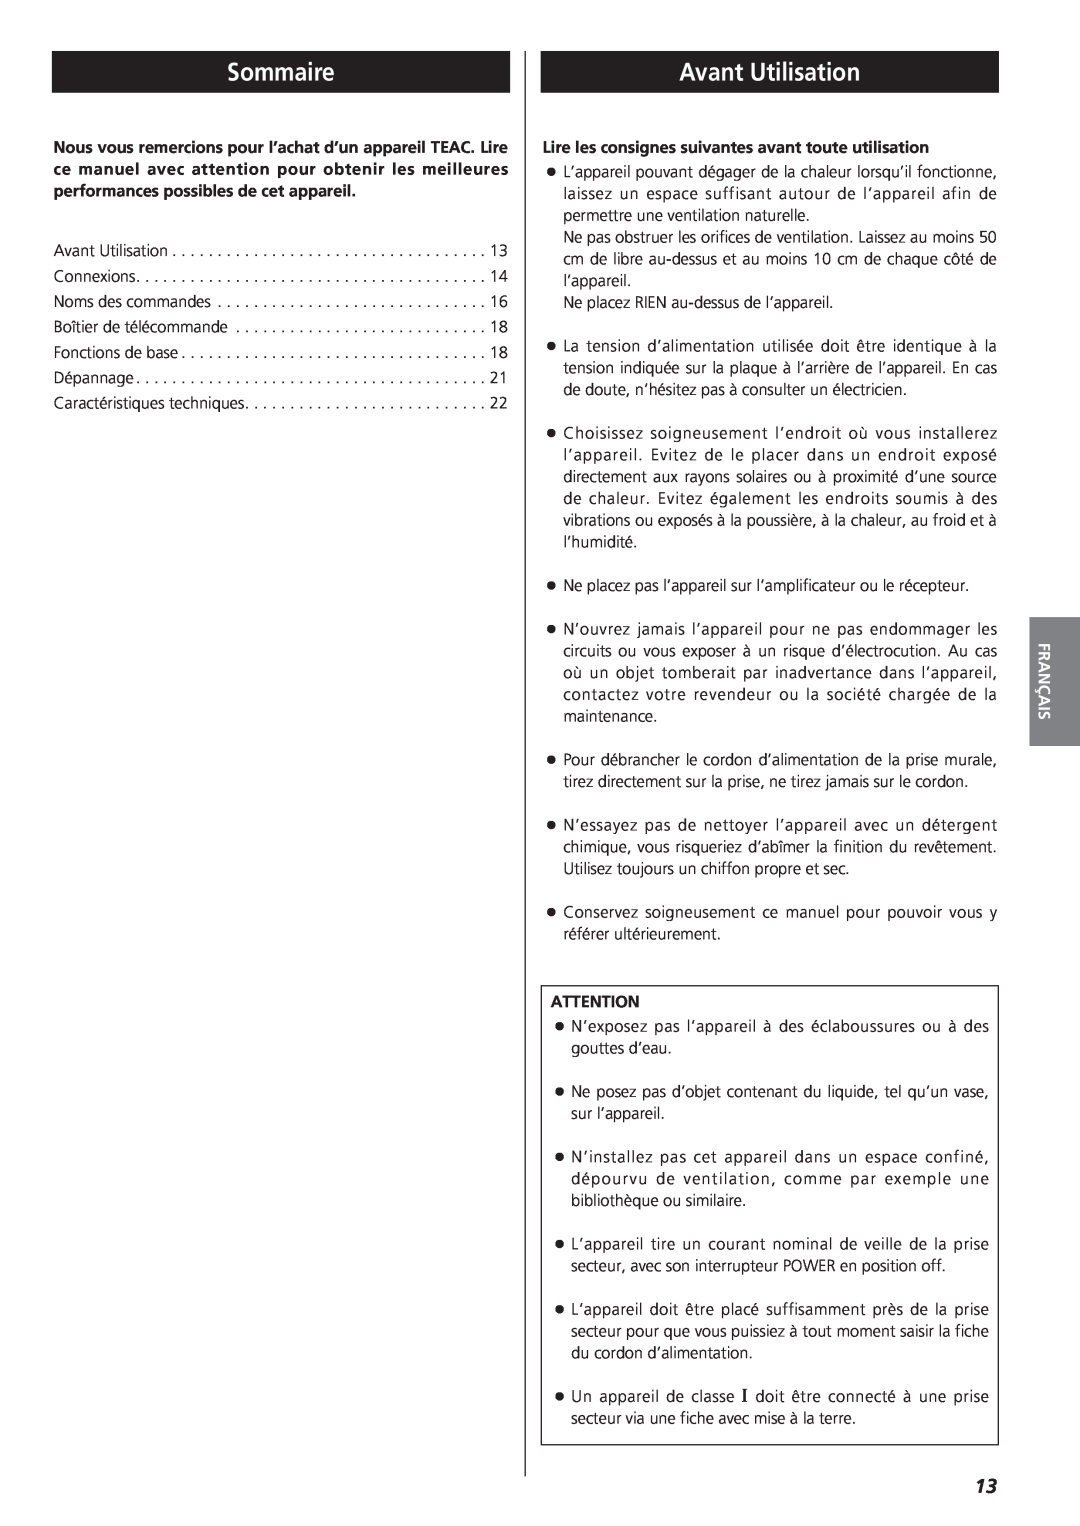 Teac A-R610 owner manual Sommaire, Avant Utilisation, Français 